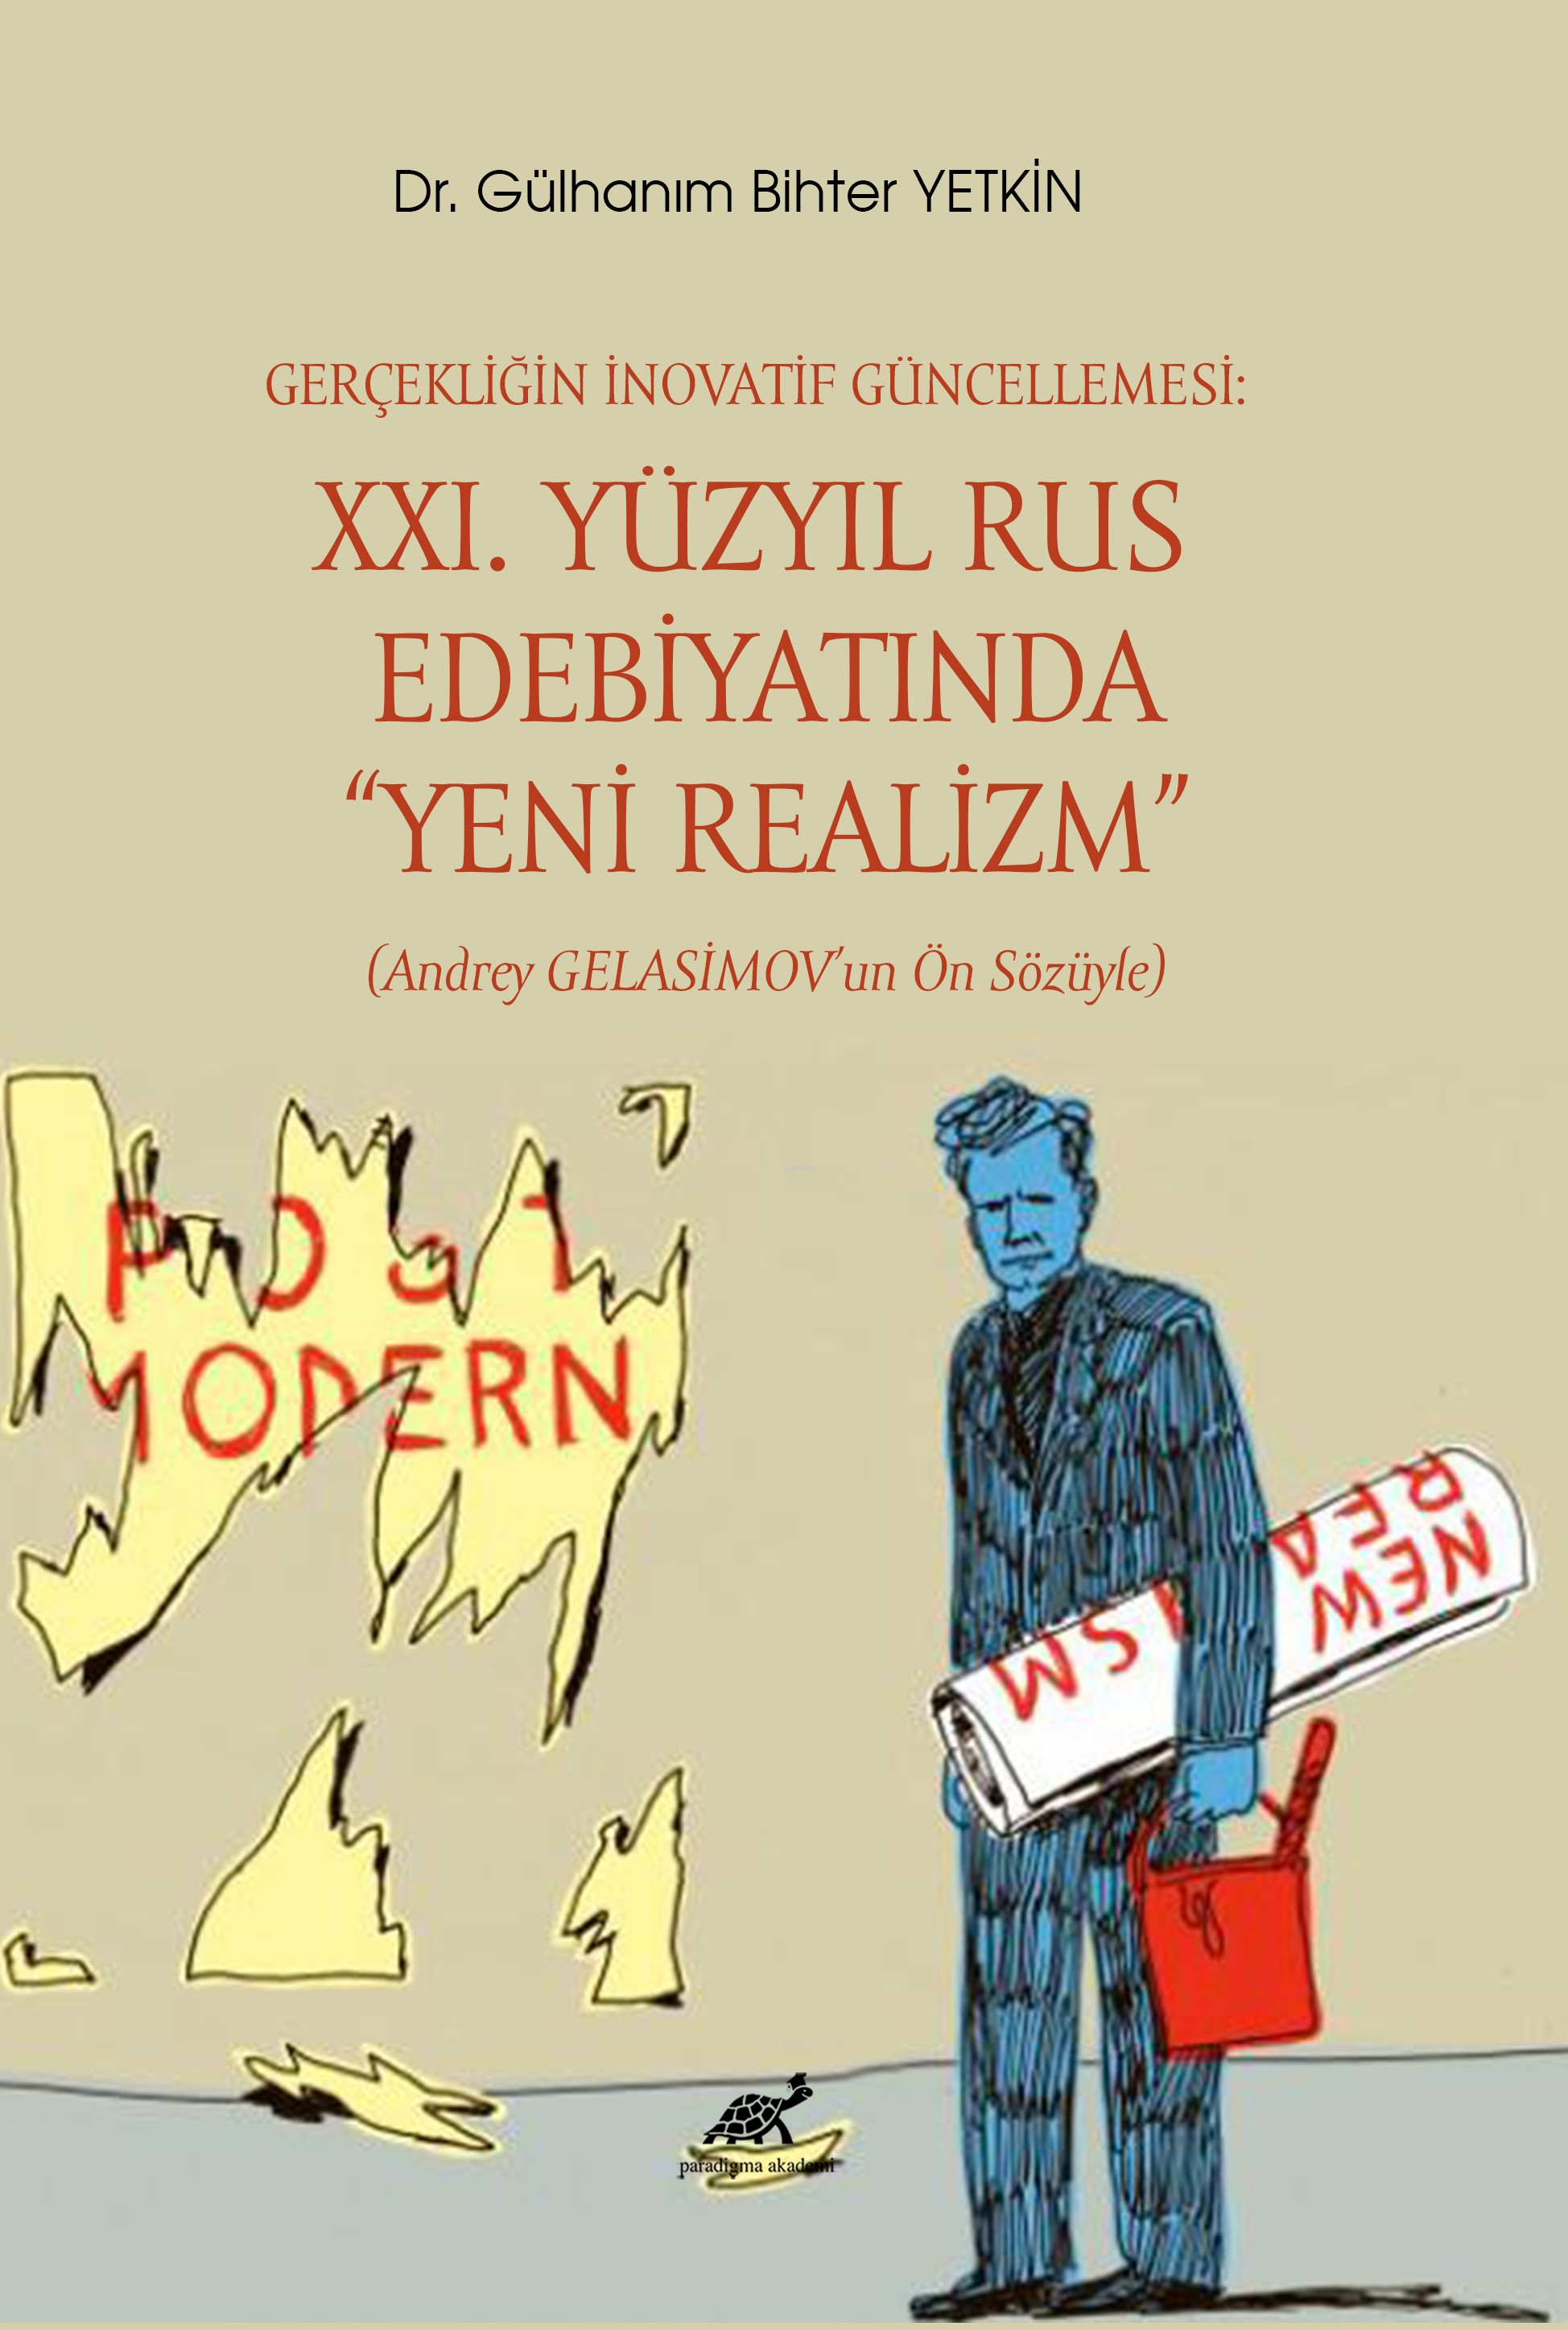 Gerçekliğin İnovatif Güncellemesi: XXI. Yüzyıl Rus Edebiyatında “Yeni Realizm”  (Andrey Gelasimov’un Ön Sözüyle)